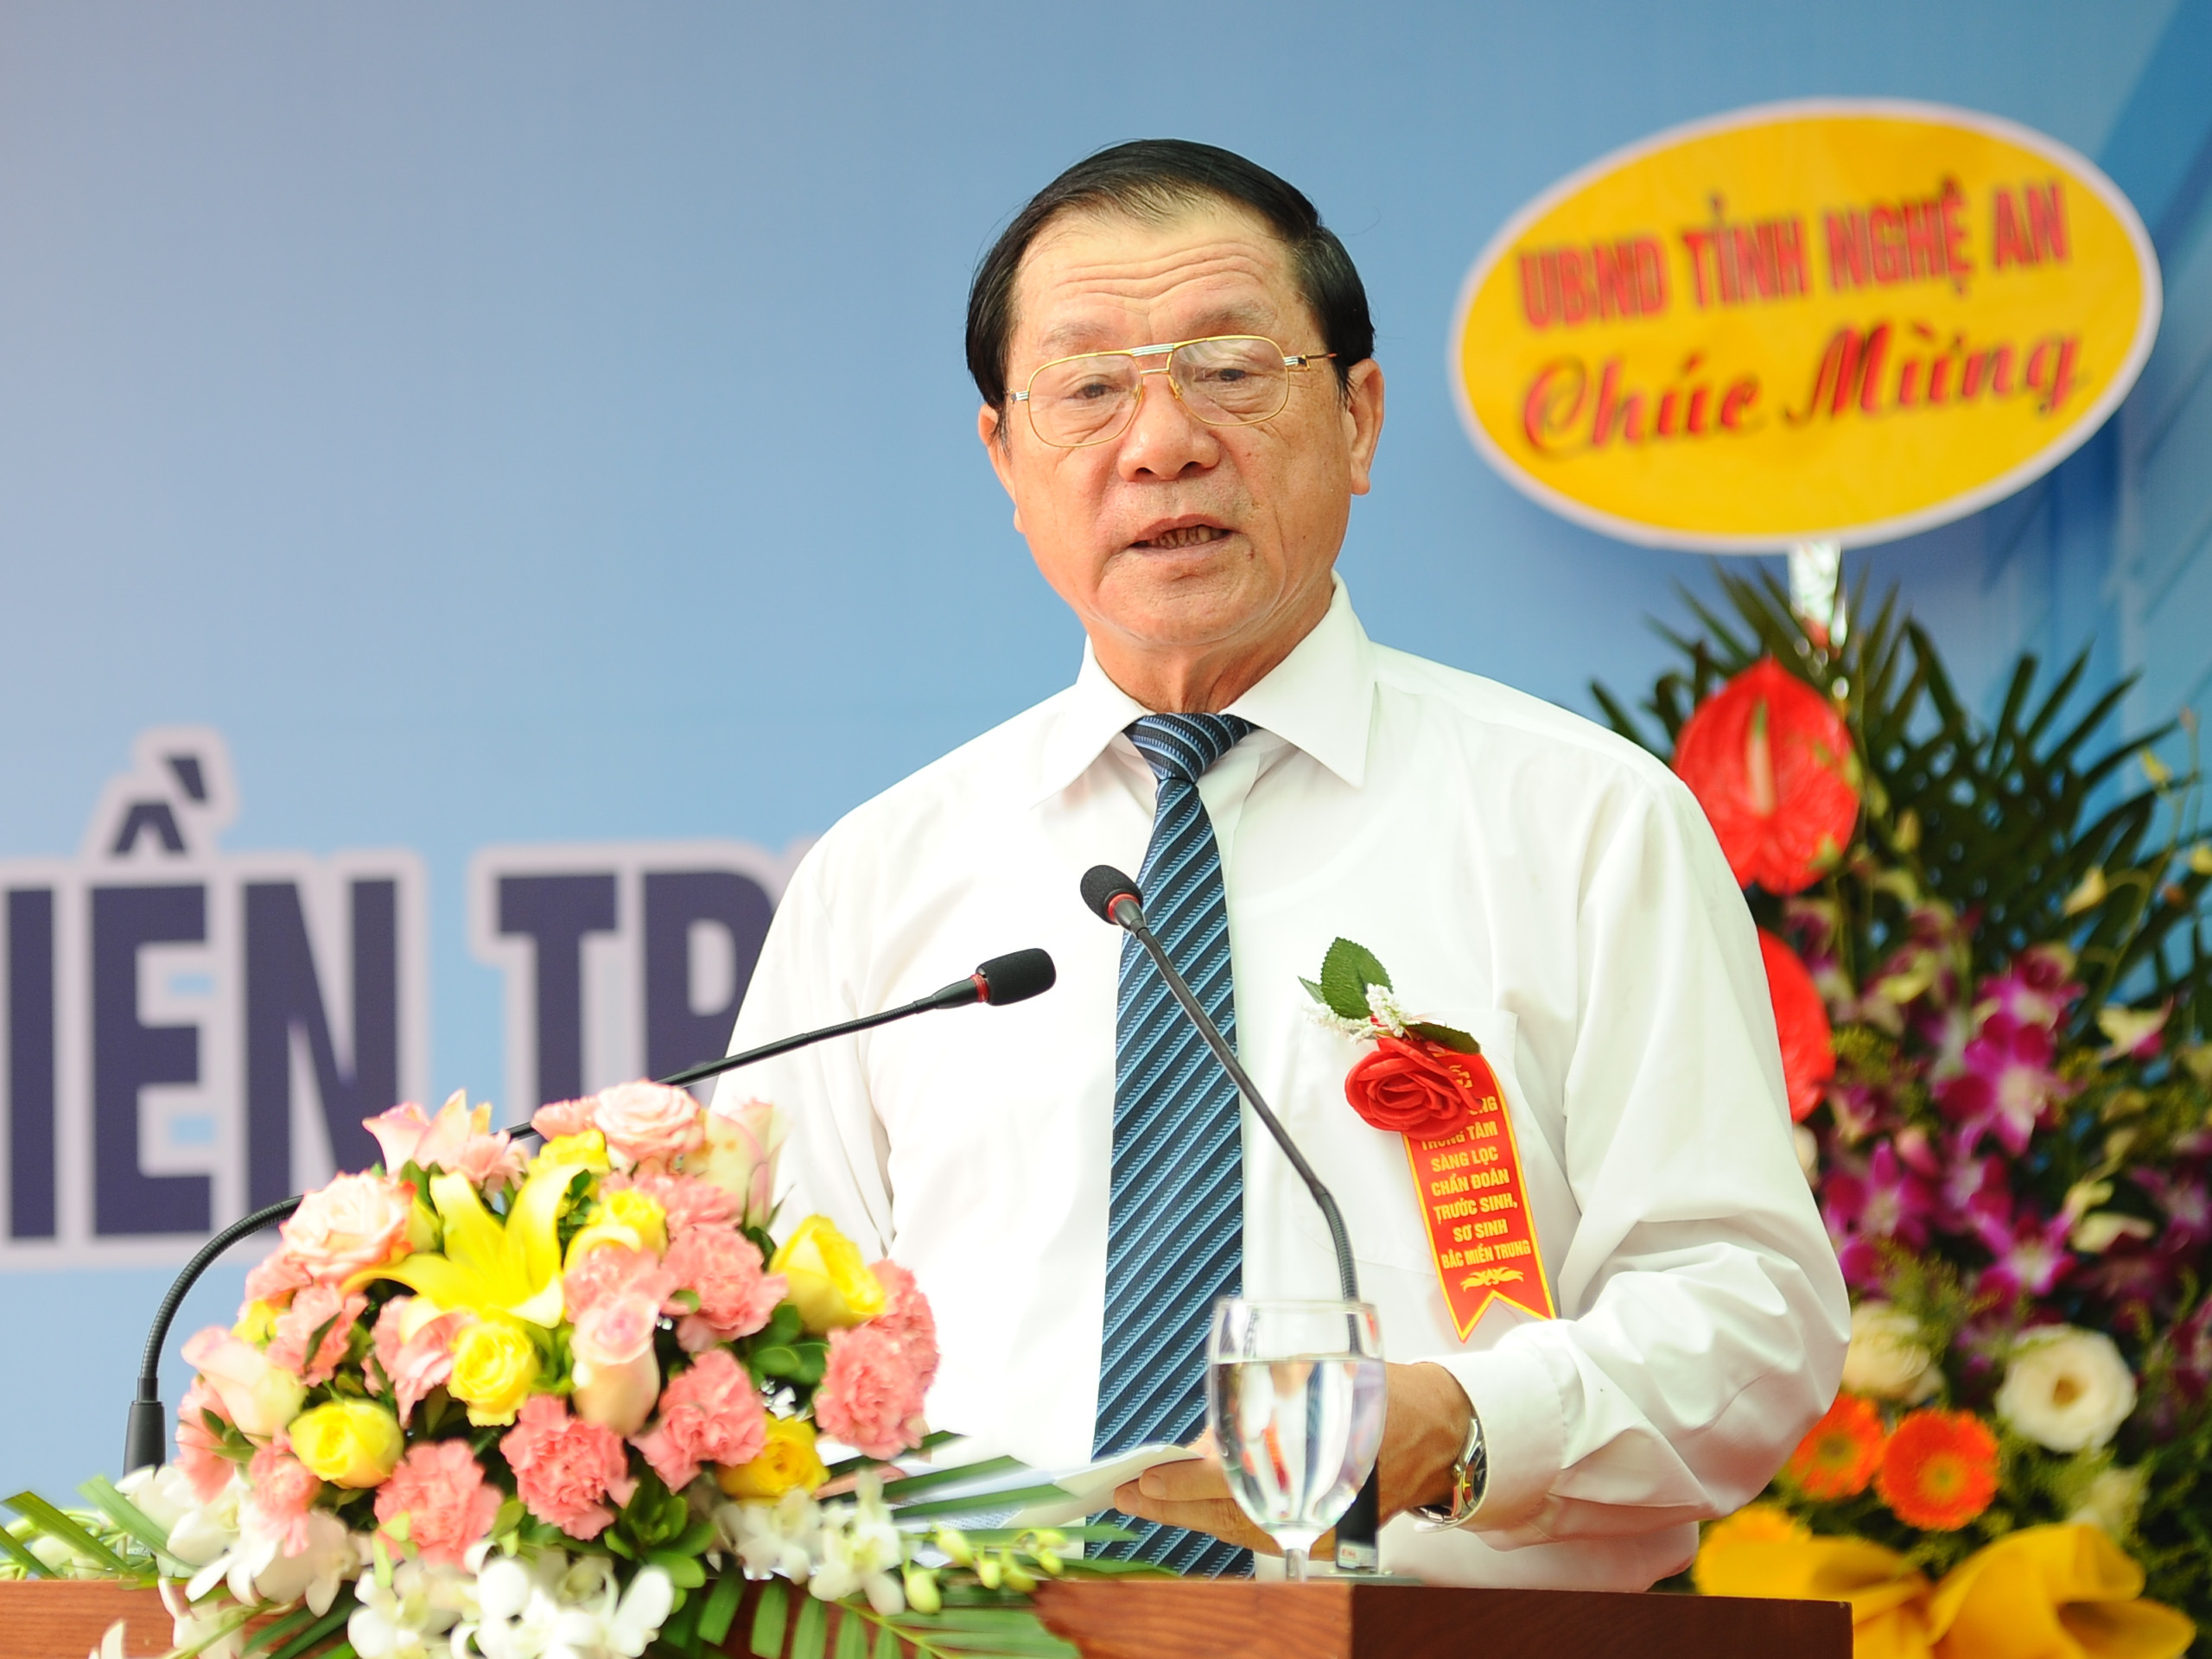 Phó Chủ tịch UBND tỉnh Lê Minh Thông yêu cầu cán bộ y bác sĩ của Trung tâm không ngừng rèn luyện nâng cao chuyên môn, phẩm chất đạo đức để hoàn thành tốt nhiệm vụ. Ảnh: Thành Cường